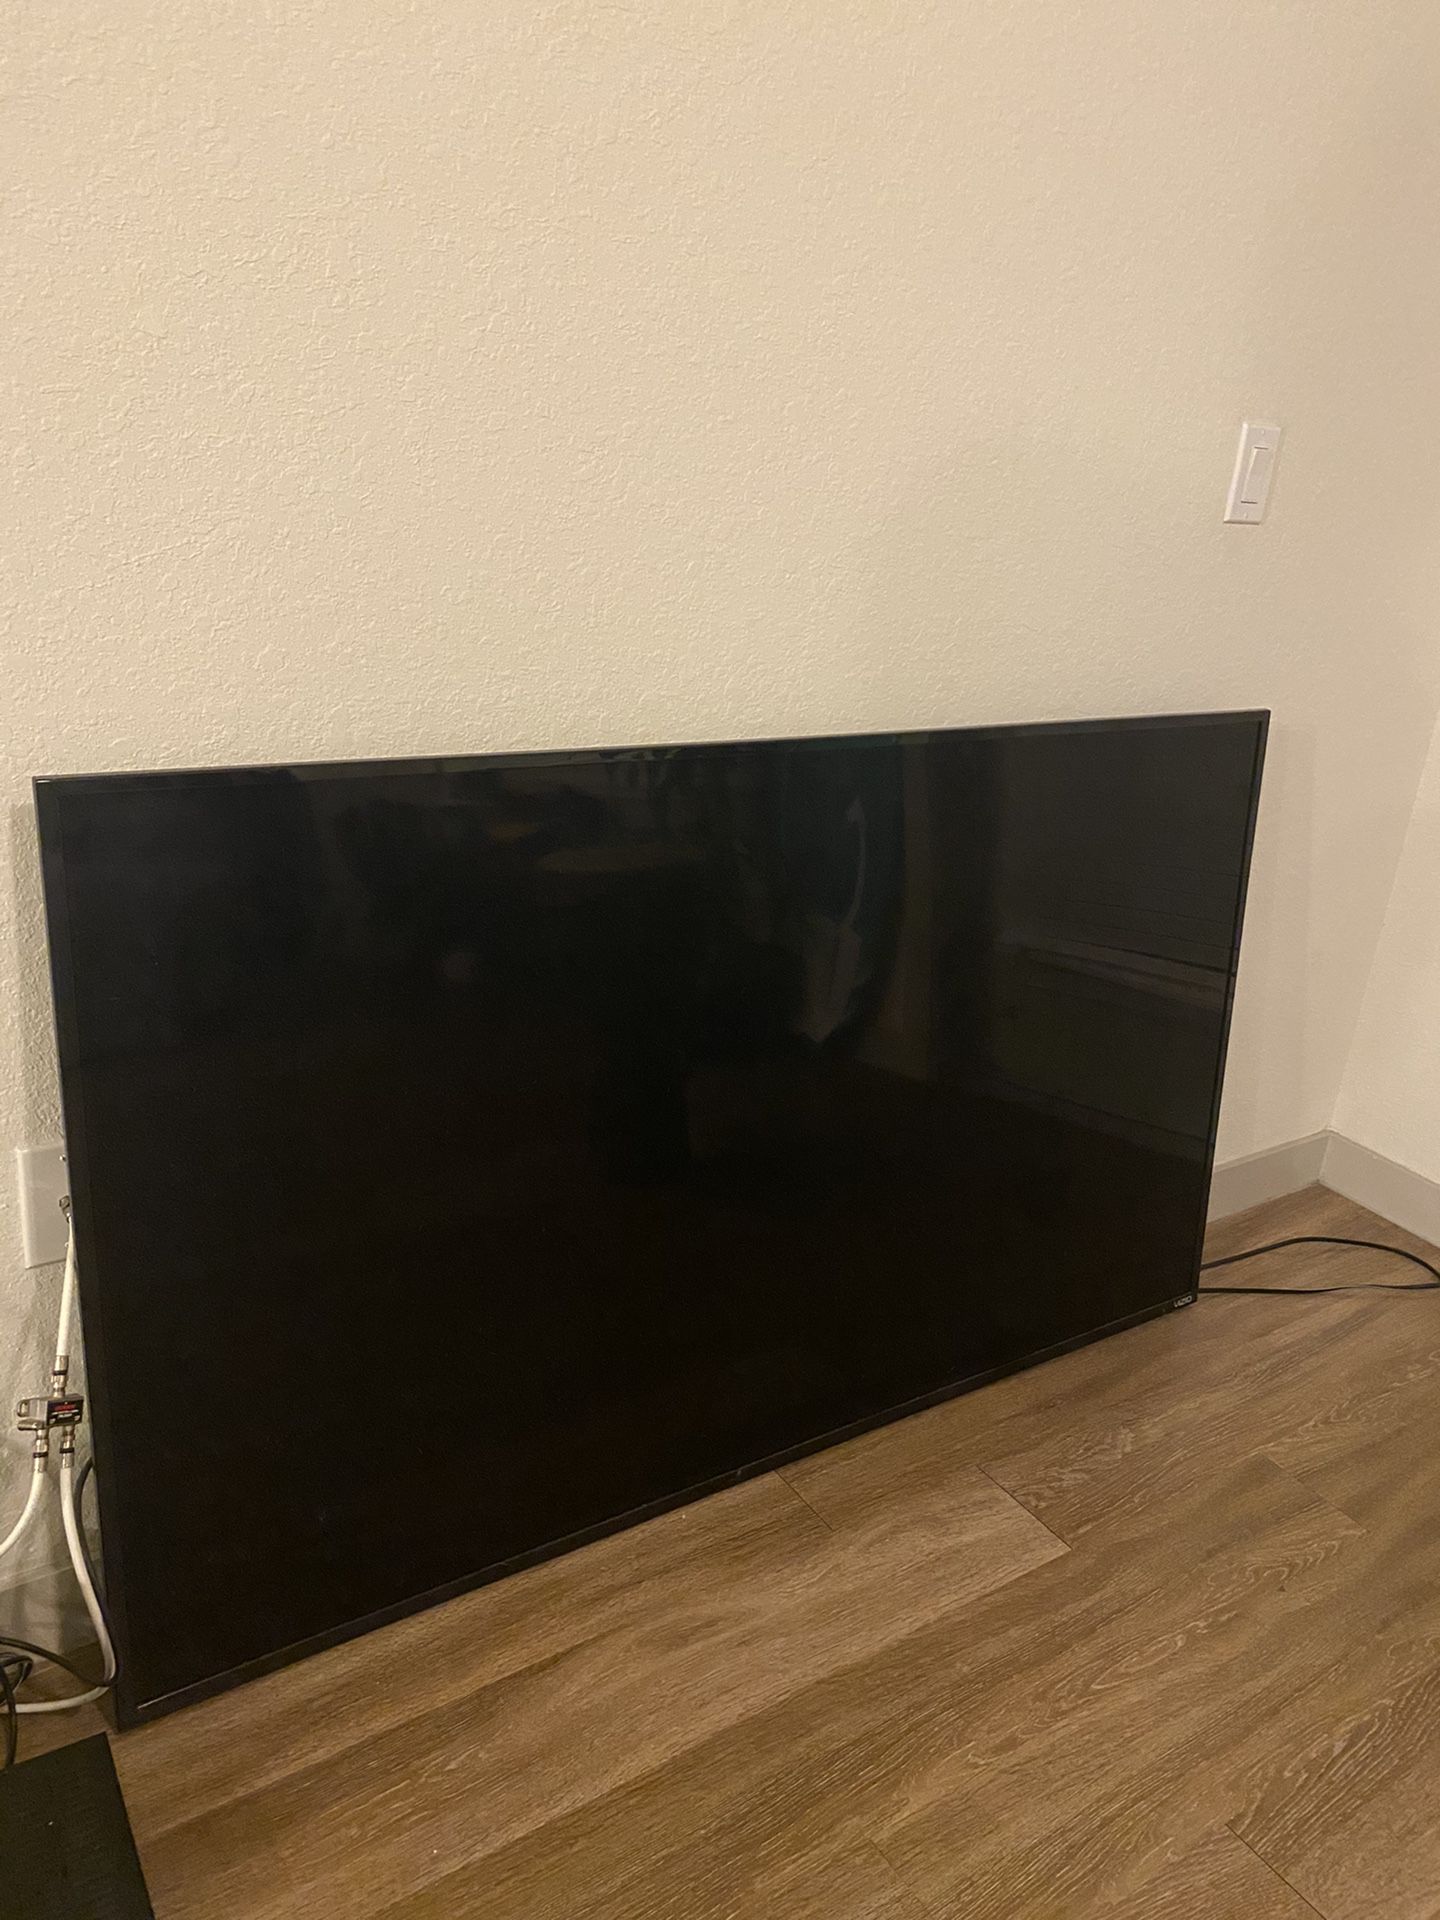 65 inch Vizio Smart TV